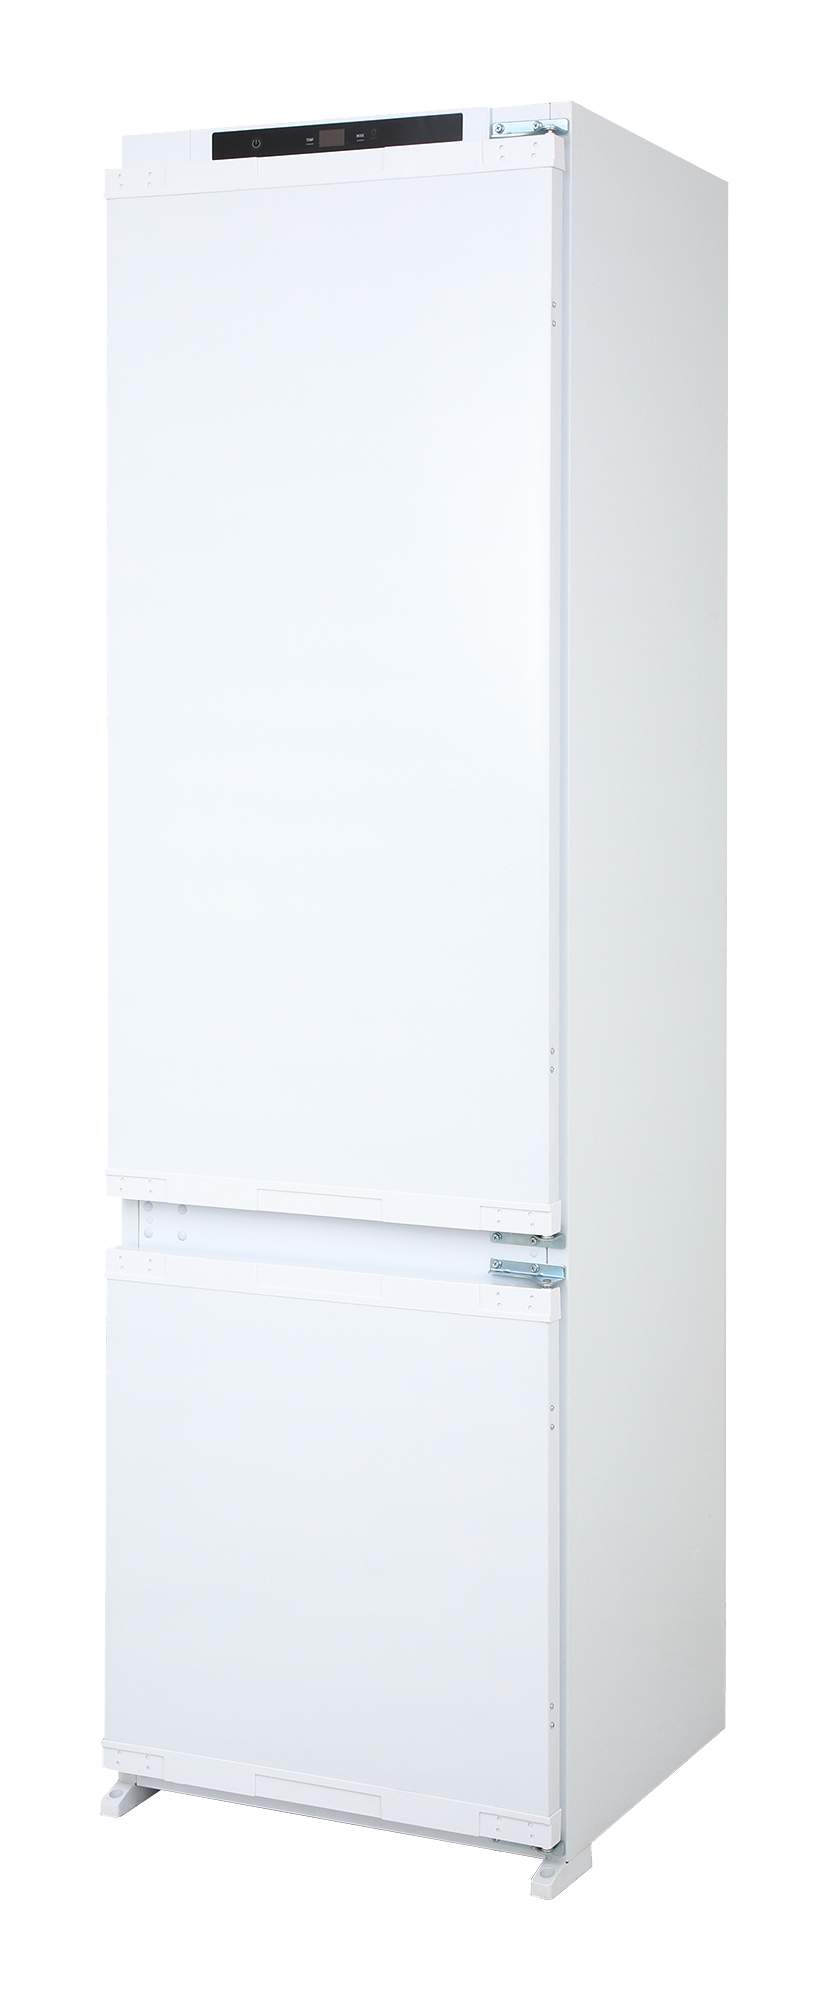 Холодильник Interline RDN 790 EIZ WA отзывы - изображения 5